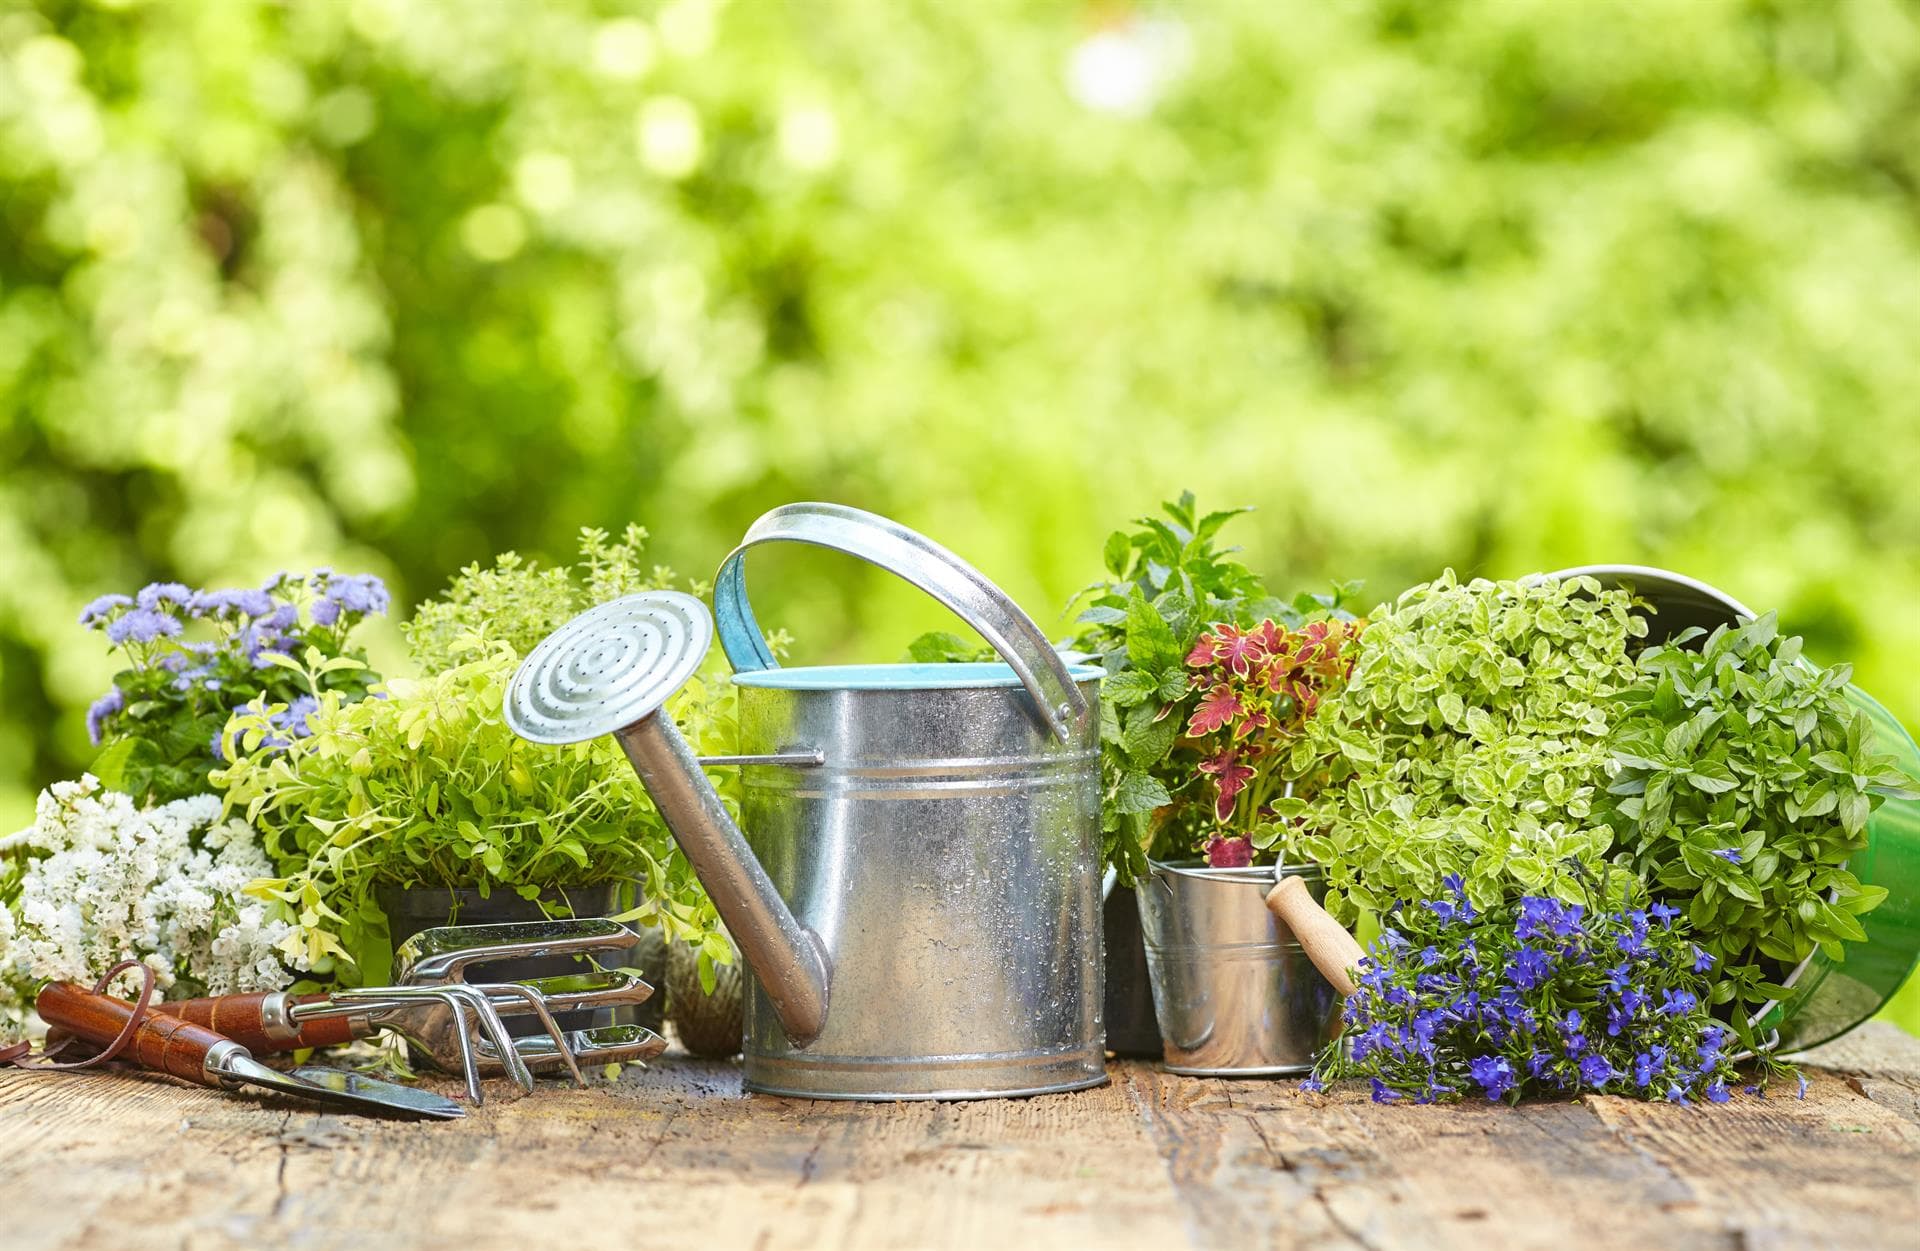 Todo lo que necesitas para tu jardín está en nuestra tienda online de jardines